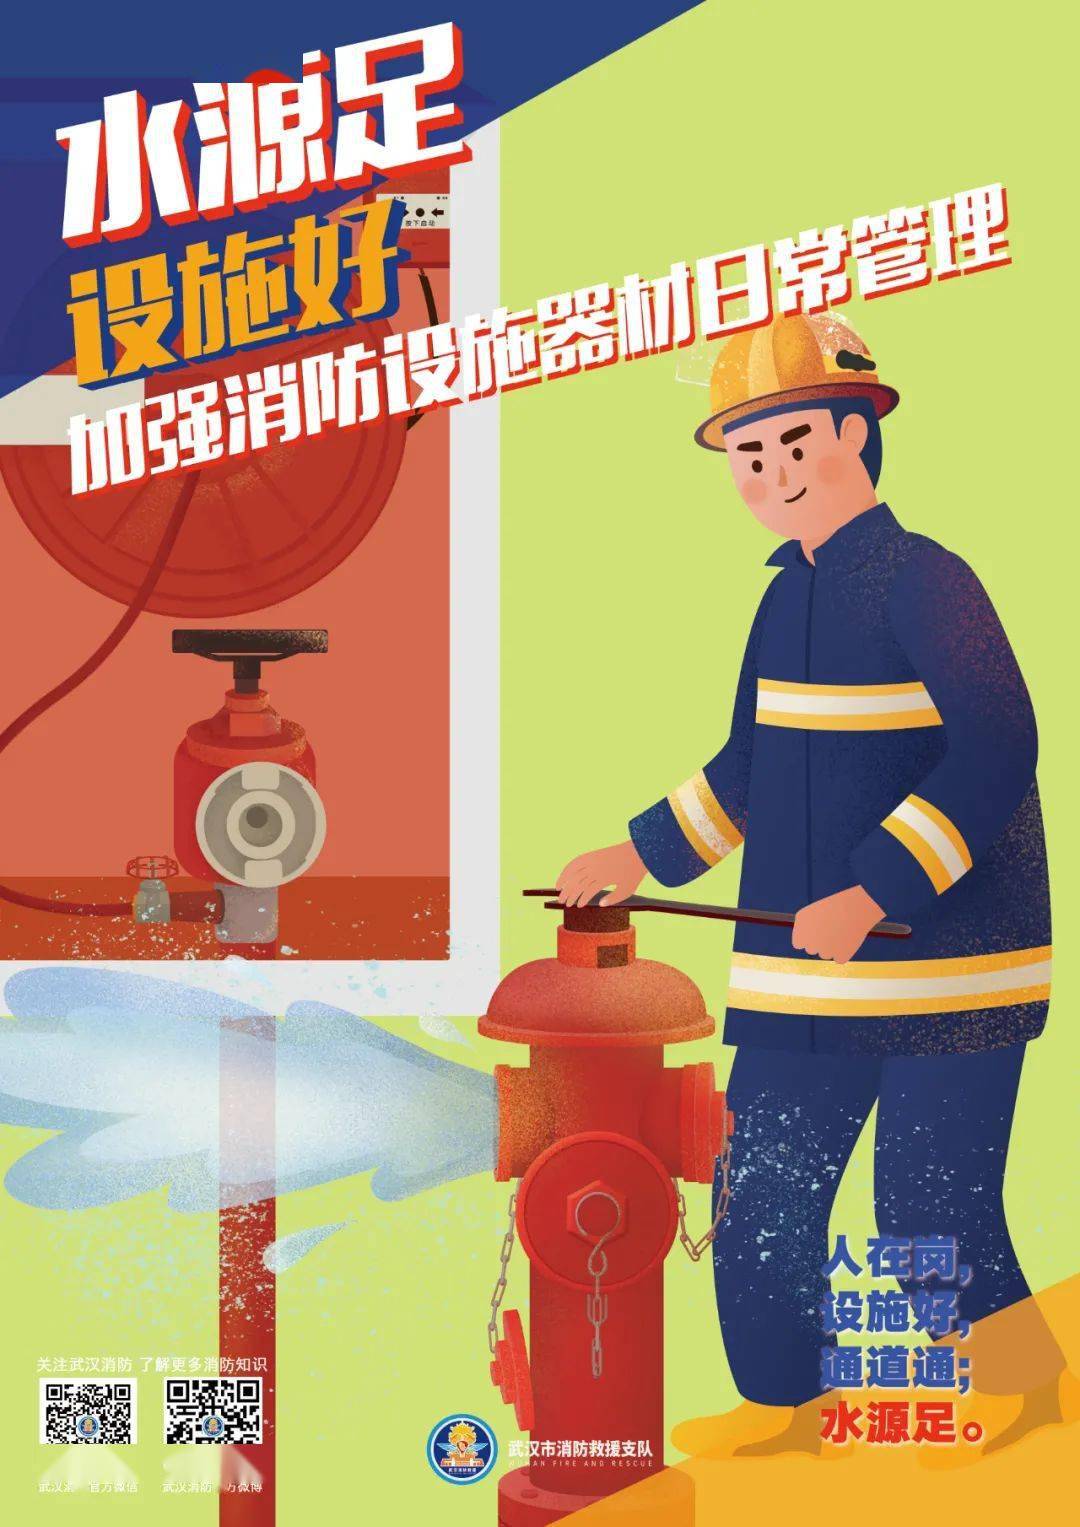 全民学消防 | 阿武的手绘消防海报第三期来啦